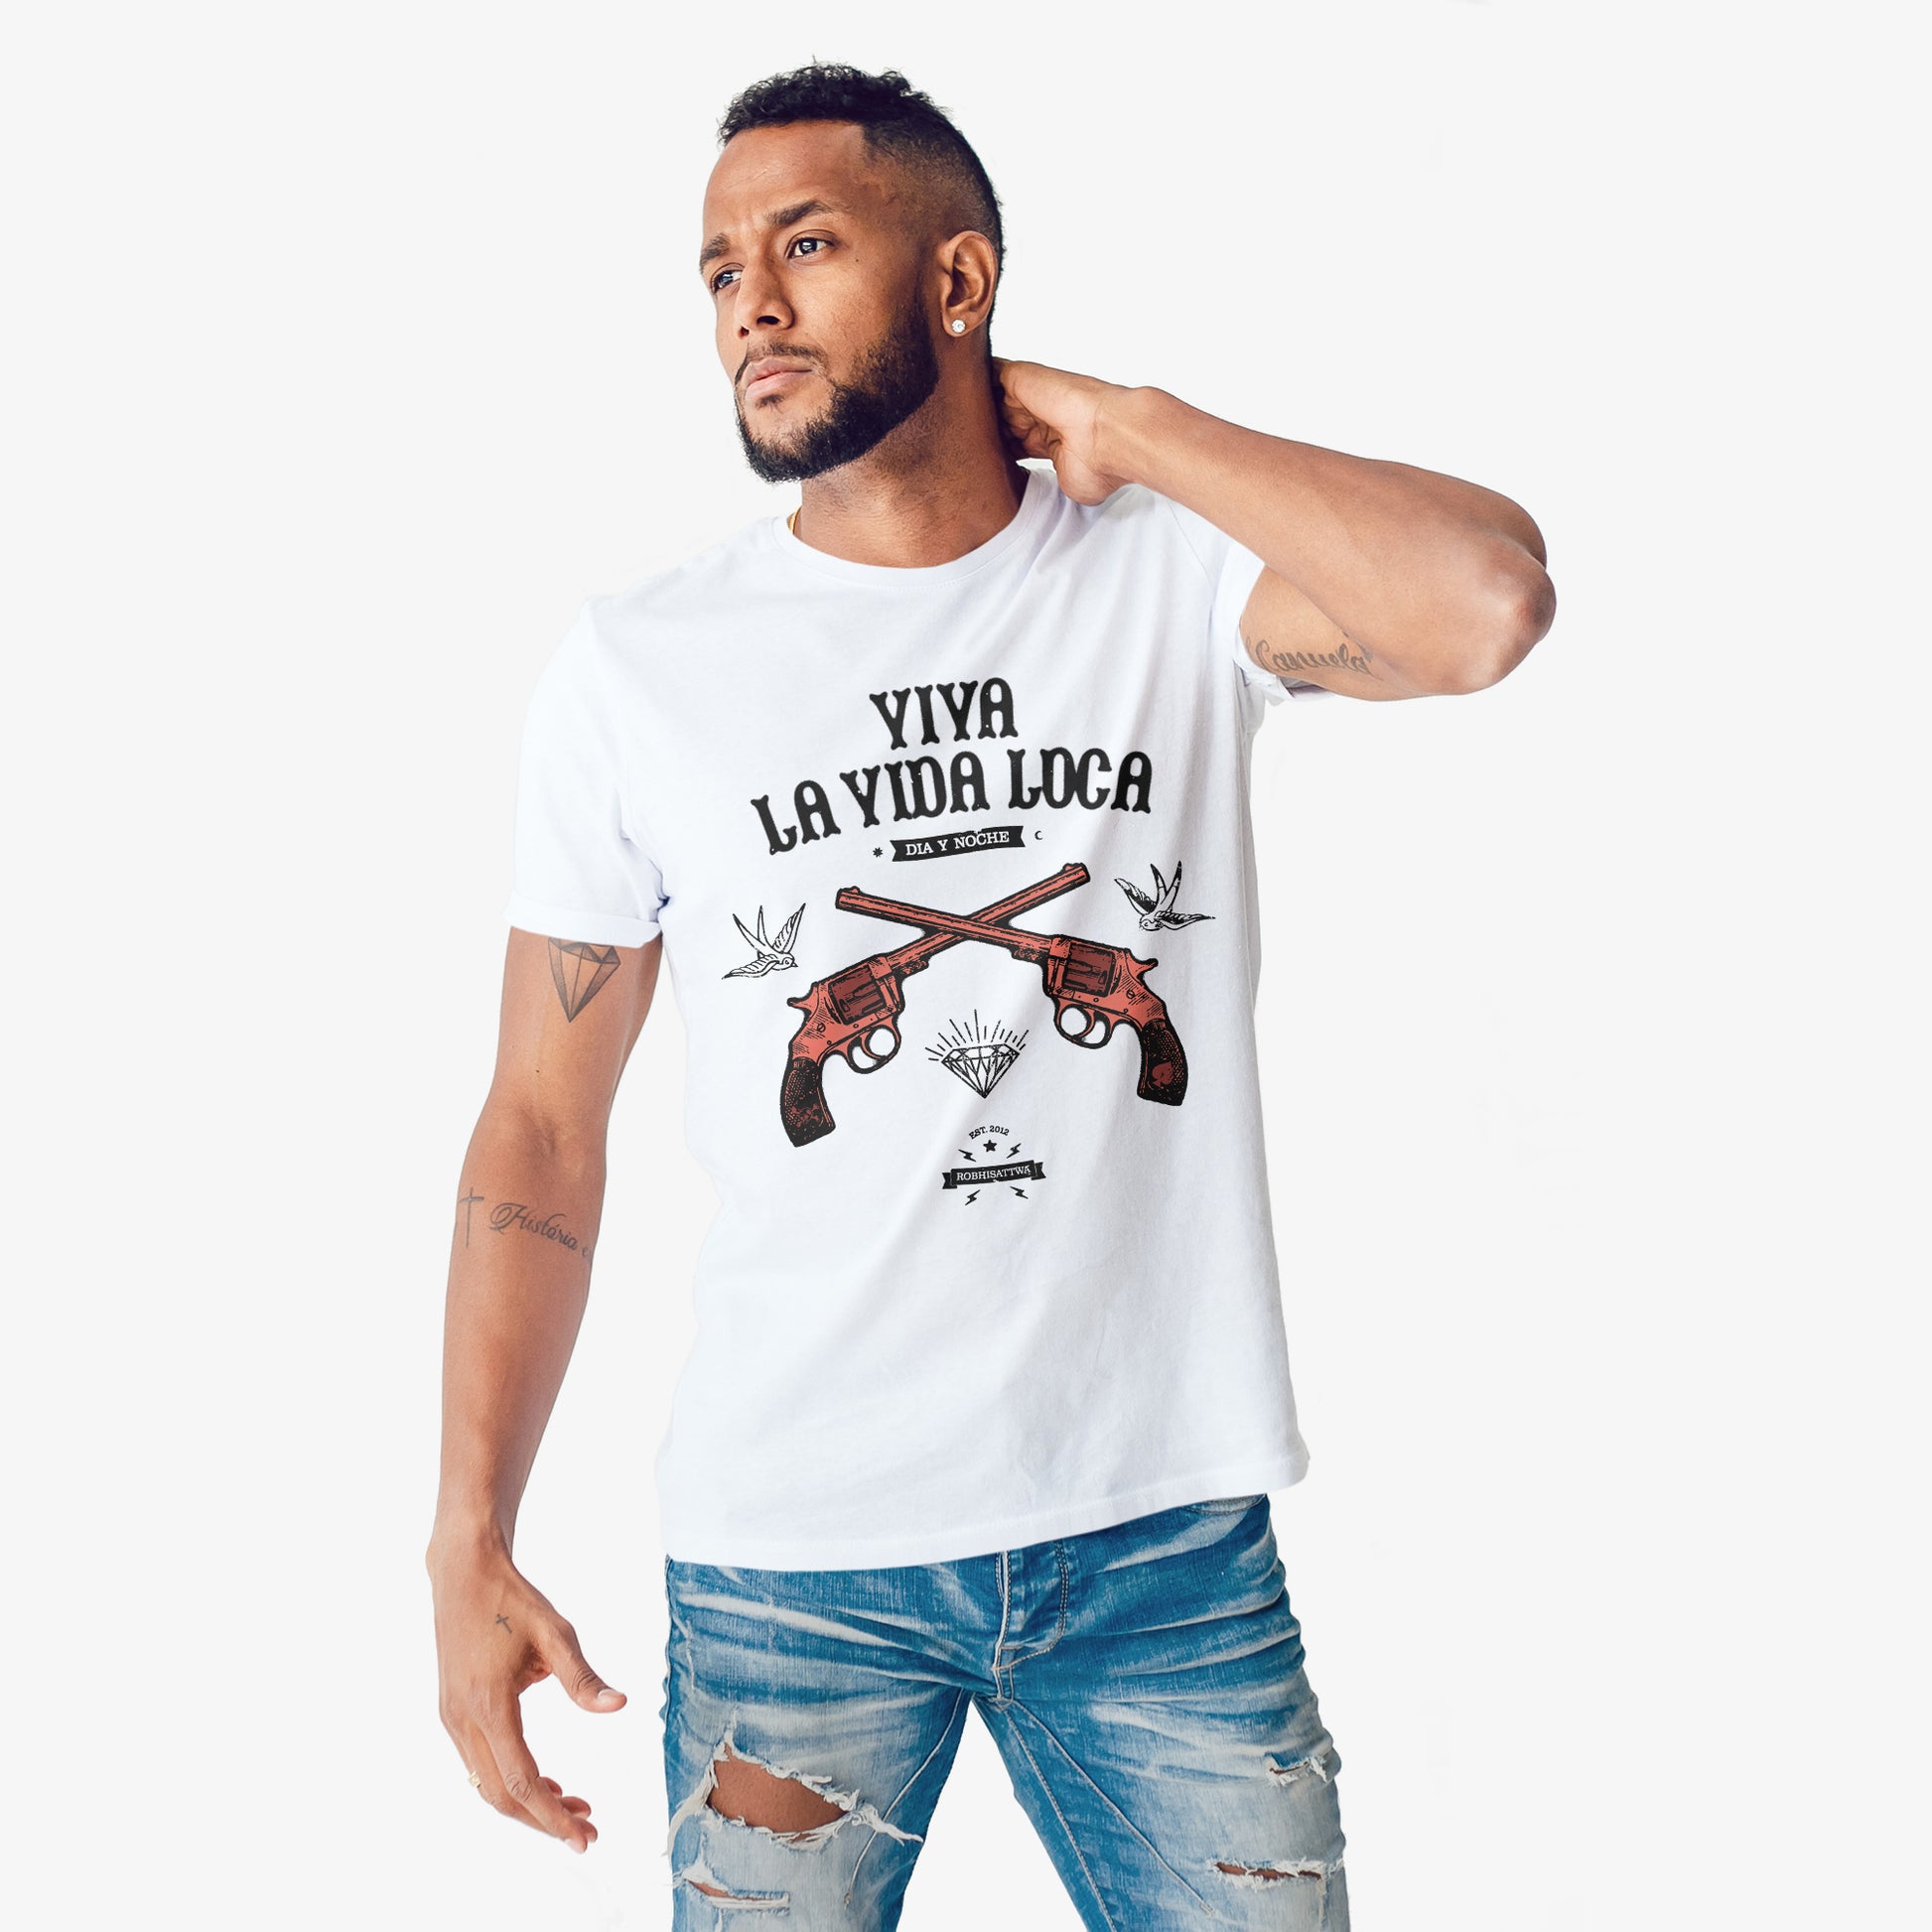 Robhisattwa Viva La Vida Loca Unisex T-Shirt White Man